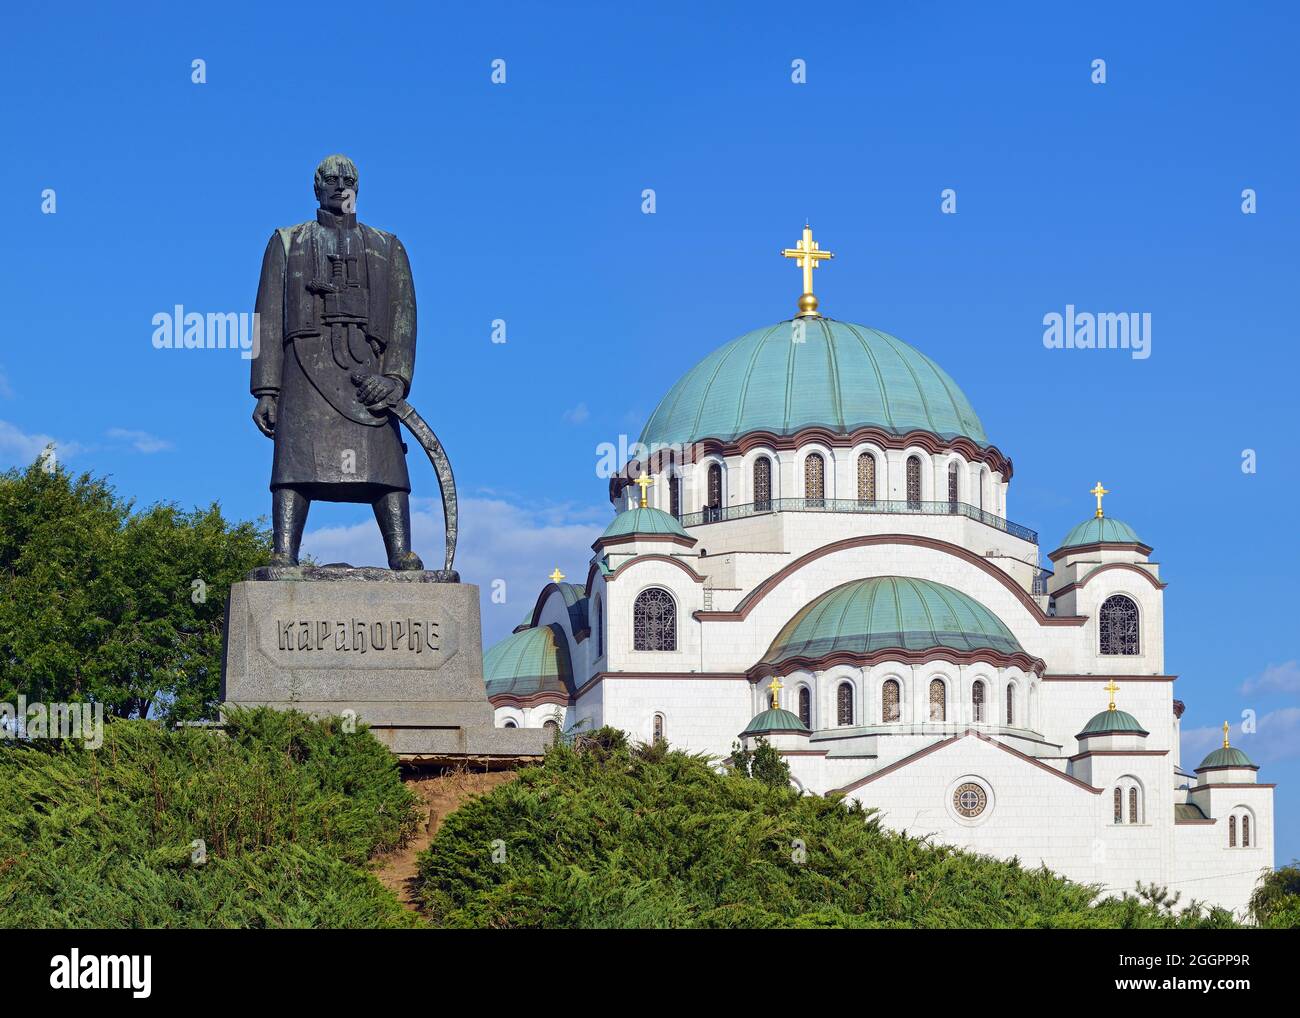 Karadjordje Monument with the Church of Saint Sava in the background, Karadjordjev Park, Belgrade, Serbia Stock Photo